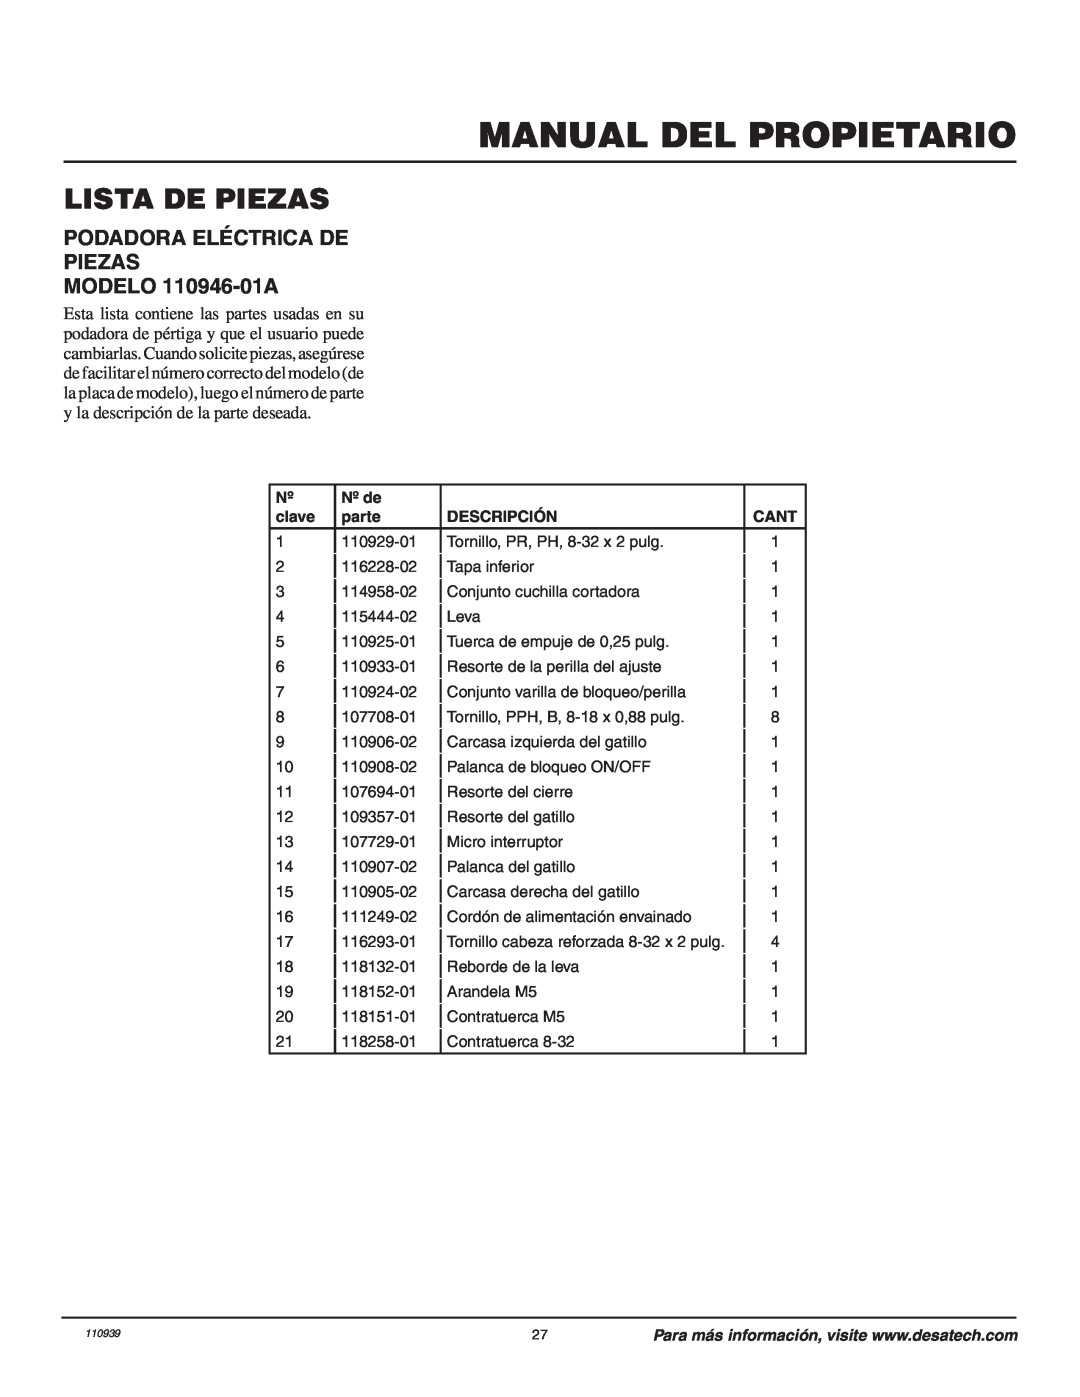 Remington owner manual Lista De Piezas, PODADORA ELÉCTRICA DE PIEZAS MODELO 110946-01A, Manual Del Propietario 